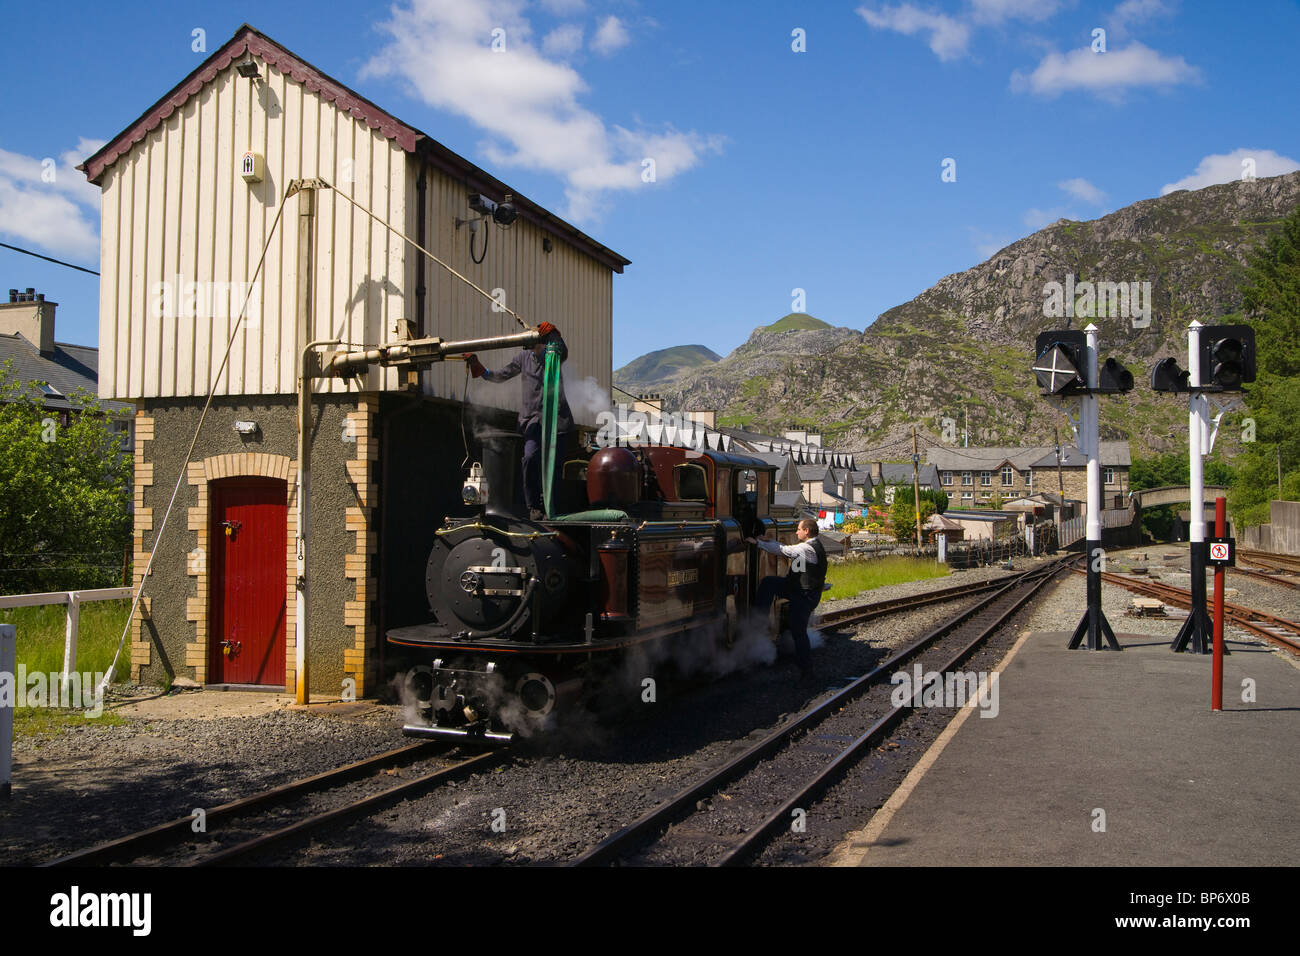 Ffestiniog railway Station, Blaenau Ffestiniog, Snowdonia, north Wales  Stock Photo